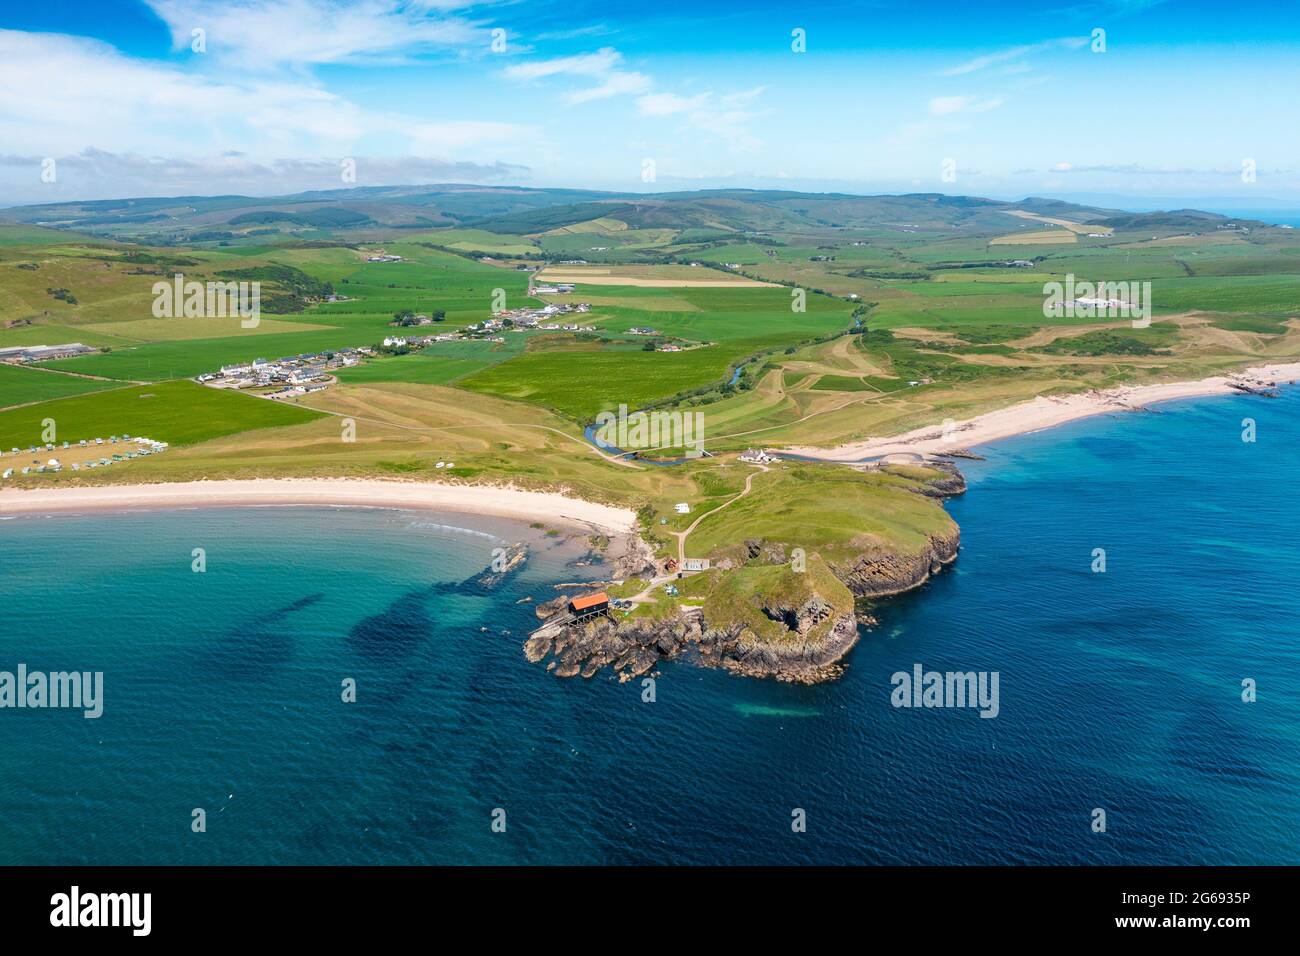 Vue aérienne de drone de Dunaverty Rock sur Dunaverty Bay Beach sur la péninsule de Kintyre, Southend, Argyll et Bute, Écosse, Royaume-Uni Banque D'Images